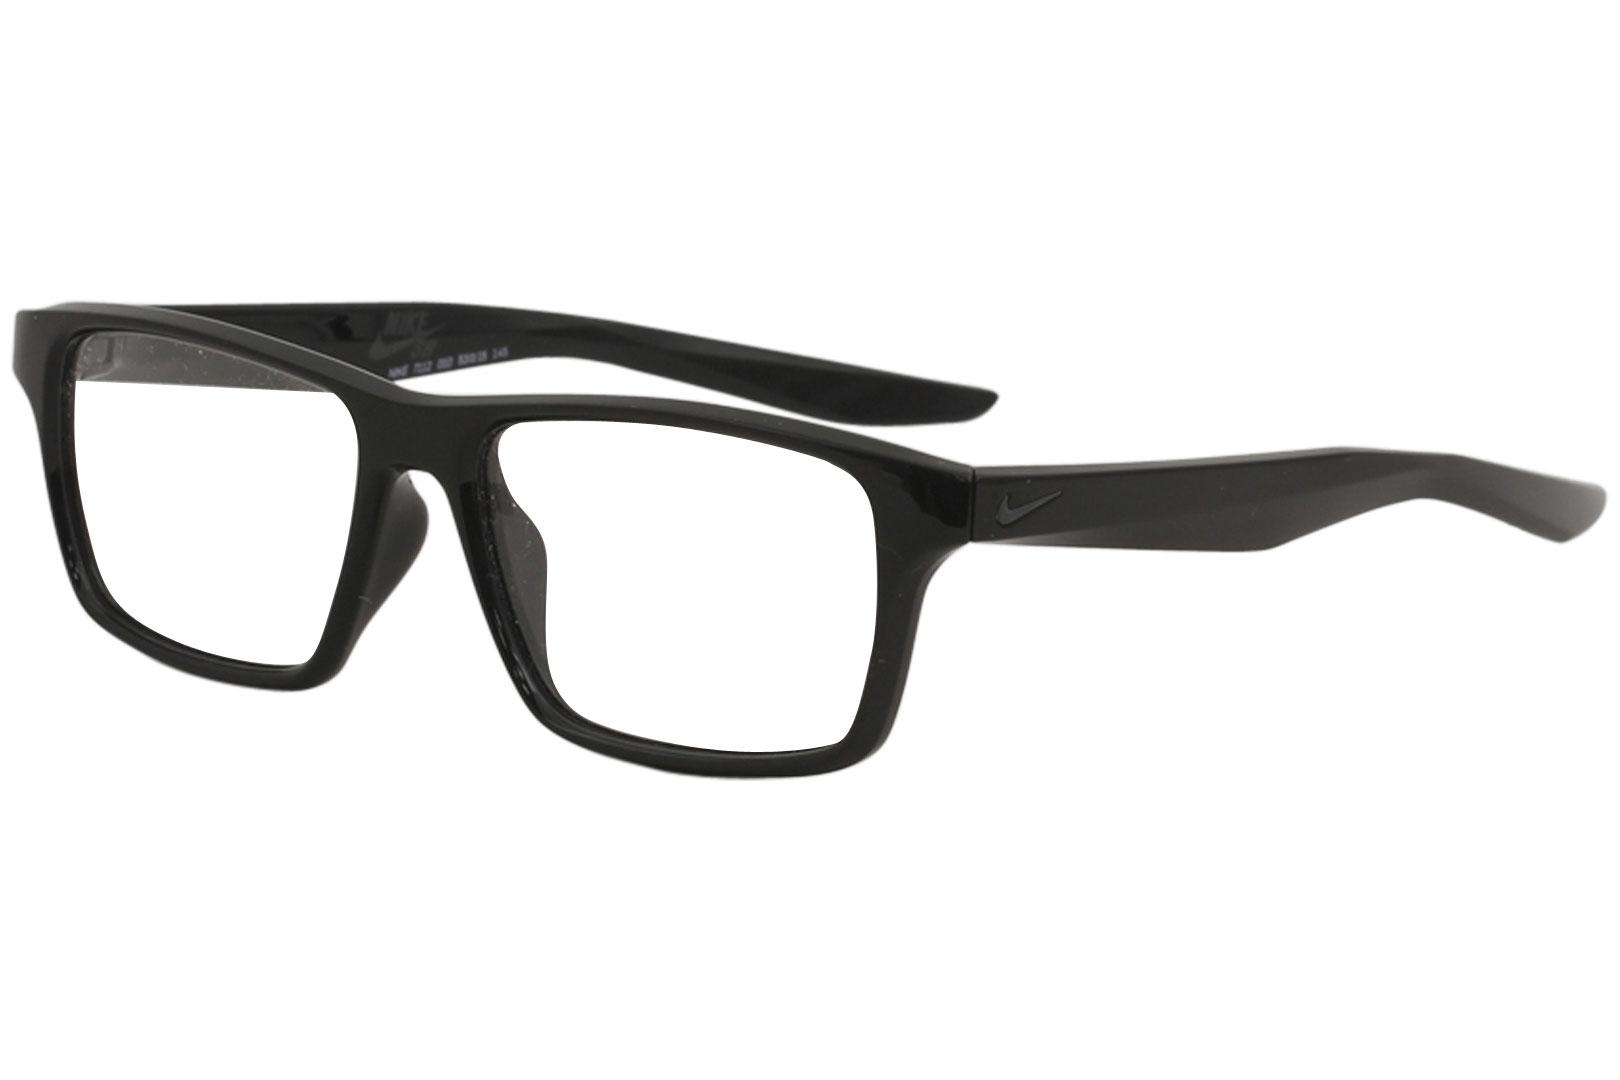 Nike SB Men's Eyeglasses 7112 Full Rim Optical Frame - Black   010 - Lens 53 Bridge 15 Temple 145mm